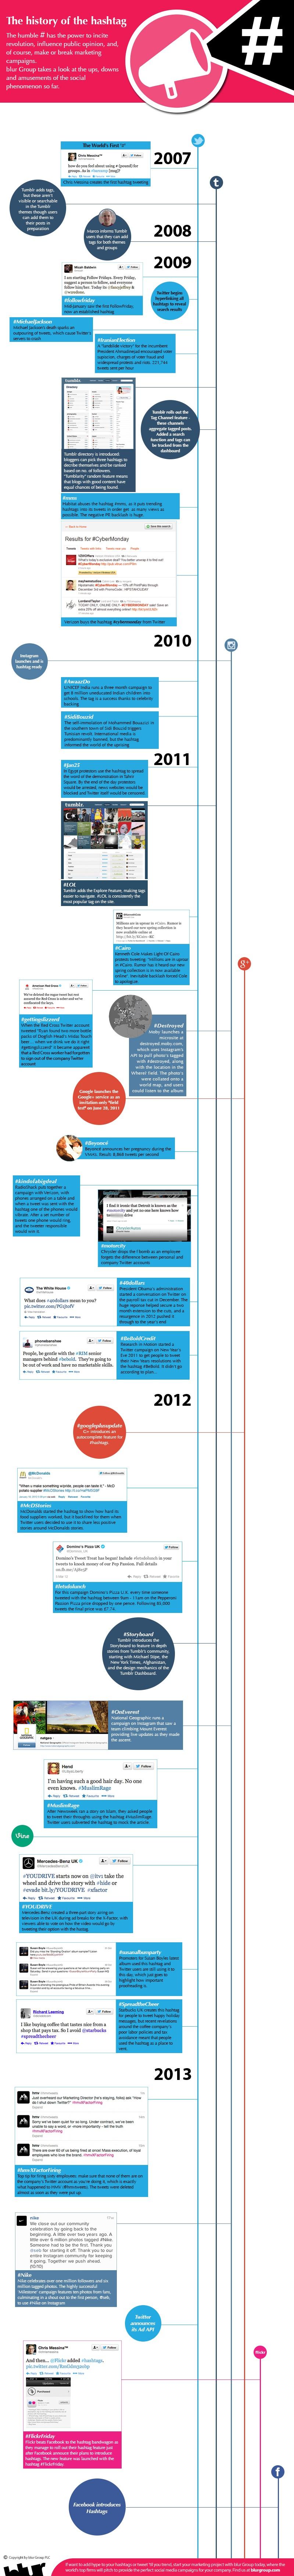 La historia del Hashtag #Infografía #Internet #Twitter #Hashtag